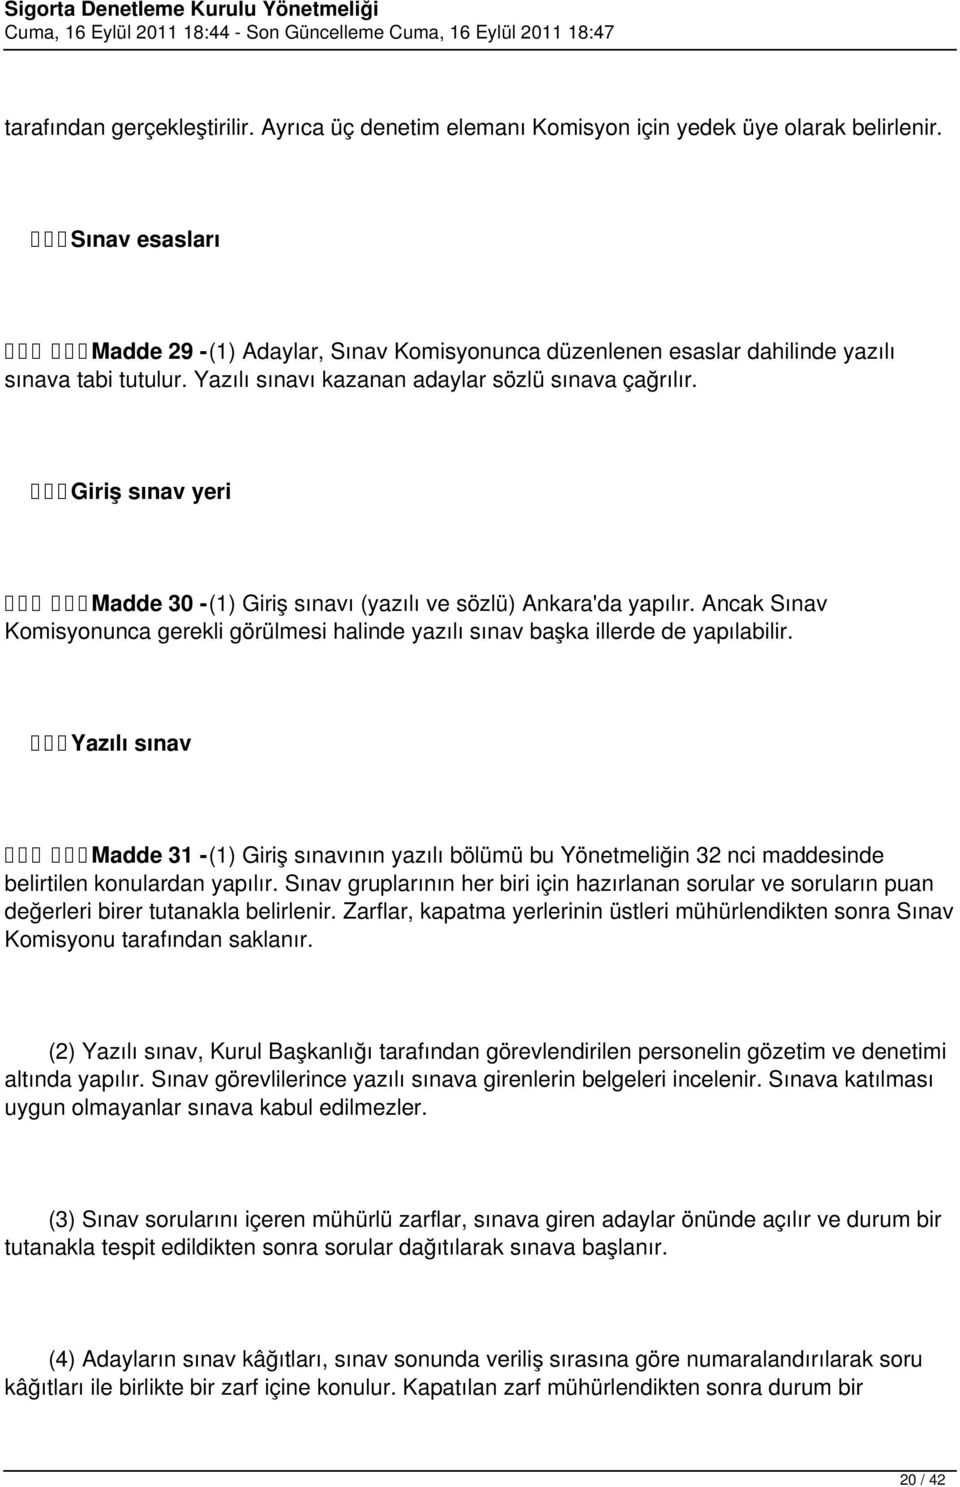 Giriş sınav yeri Madde 30 - (1) Giriş sınavı (yazılı ve sözlü) Ankara'da yapılır. Ancak Sınav Komisyonunca gerekli görülmesi halinde yazılı sınav başka illerde de yapılabilir.